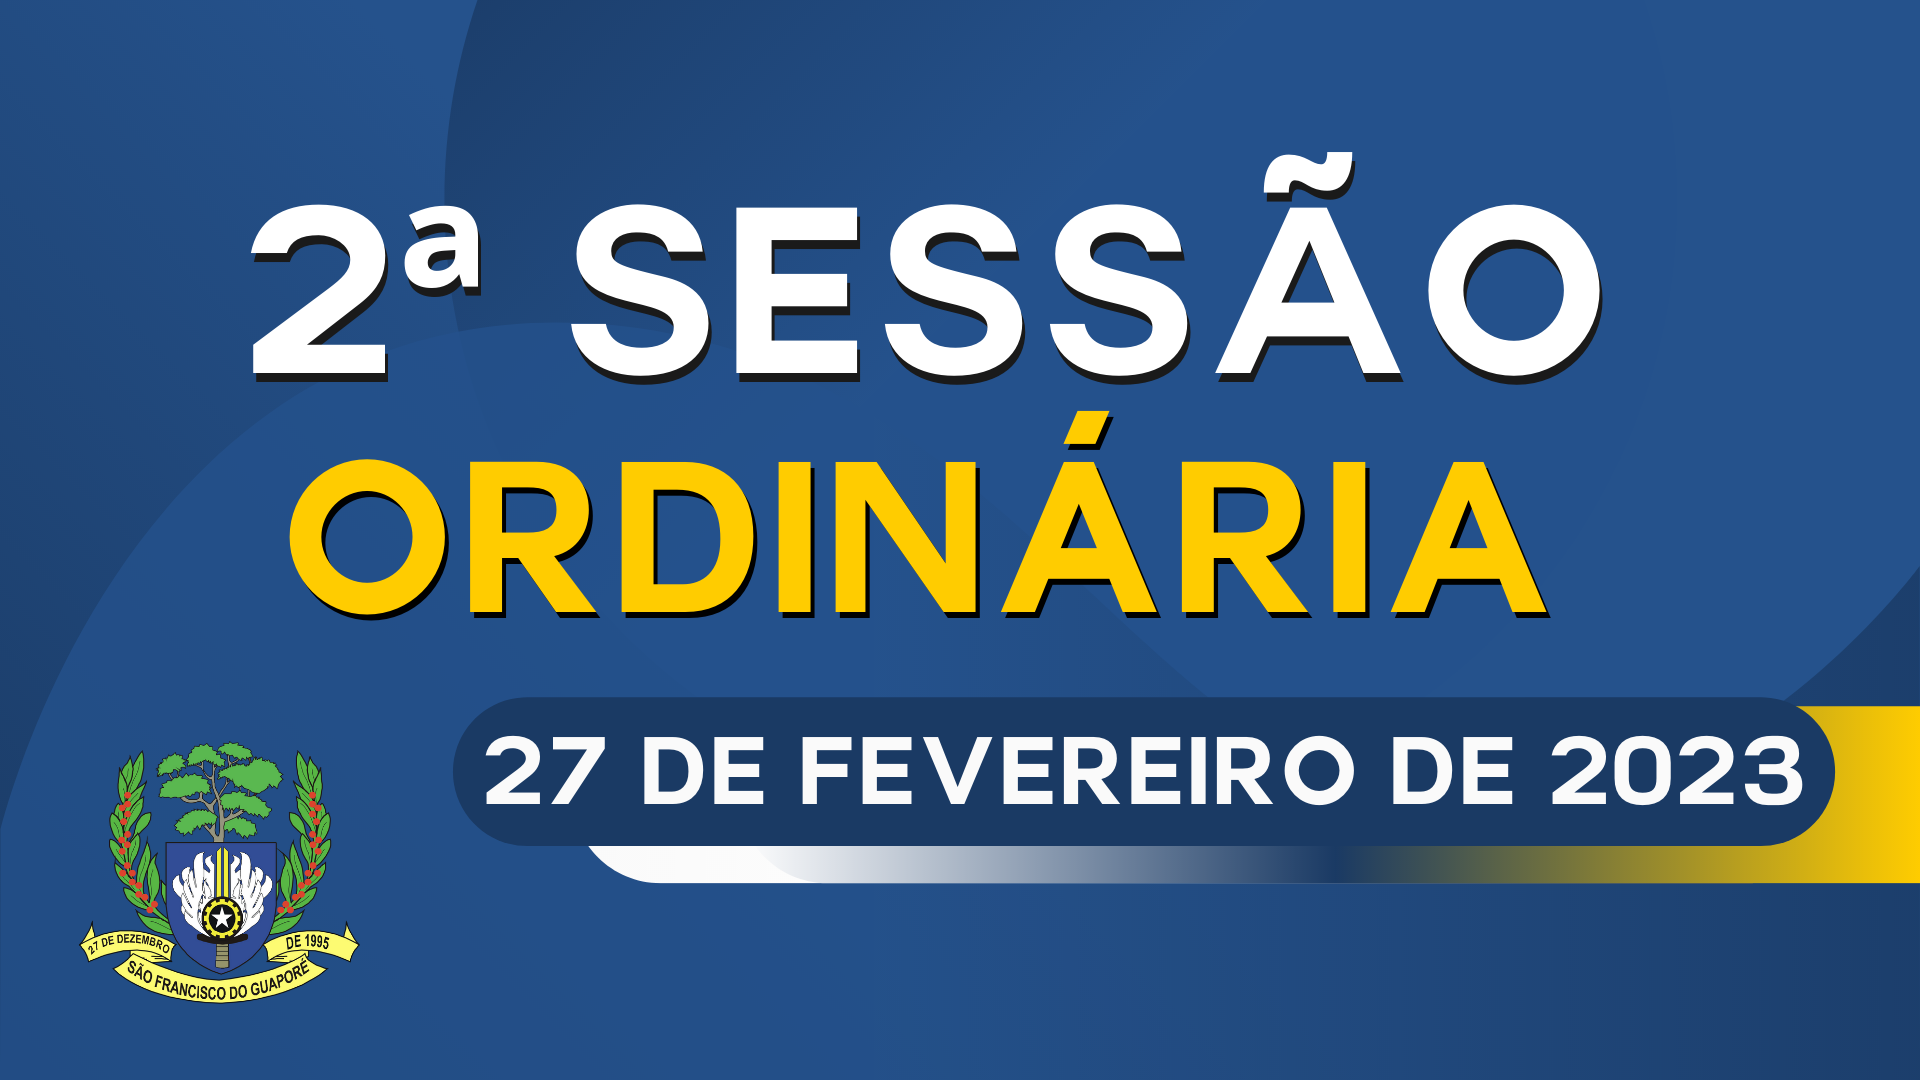 Ordem do dia da Sessão Ordinária de segunda feira dia 27/02/2023.